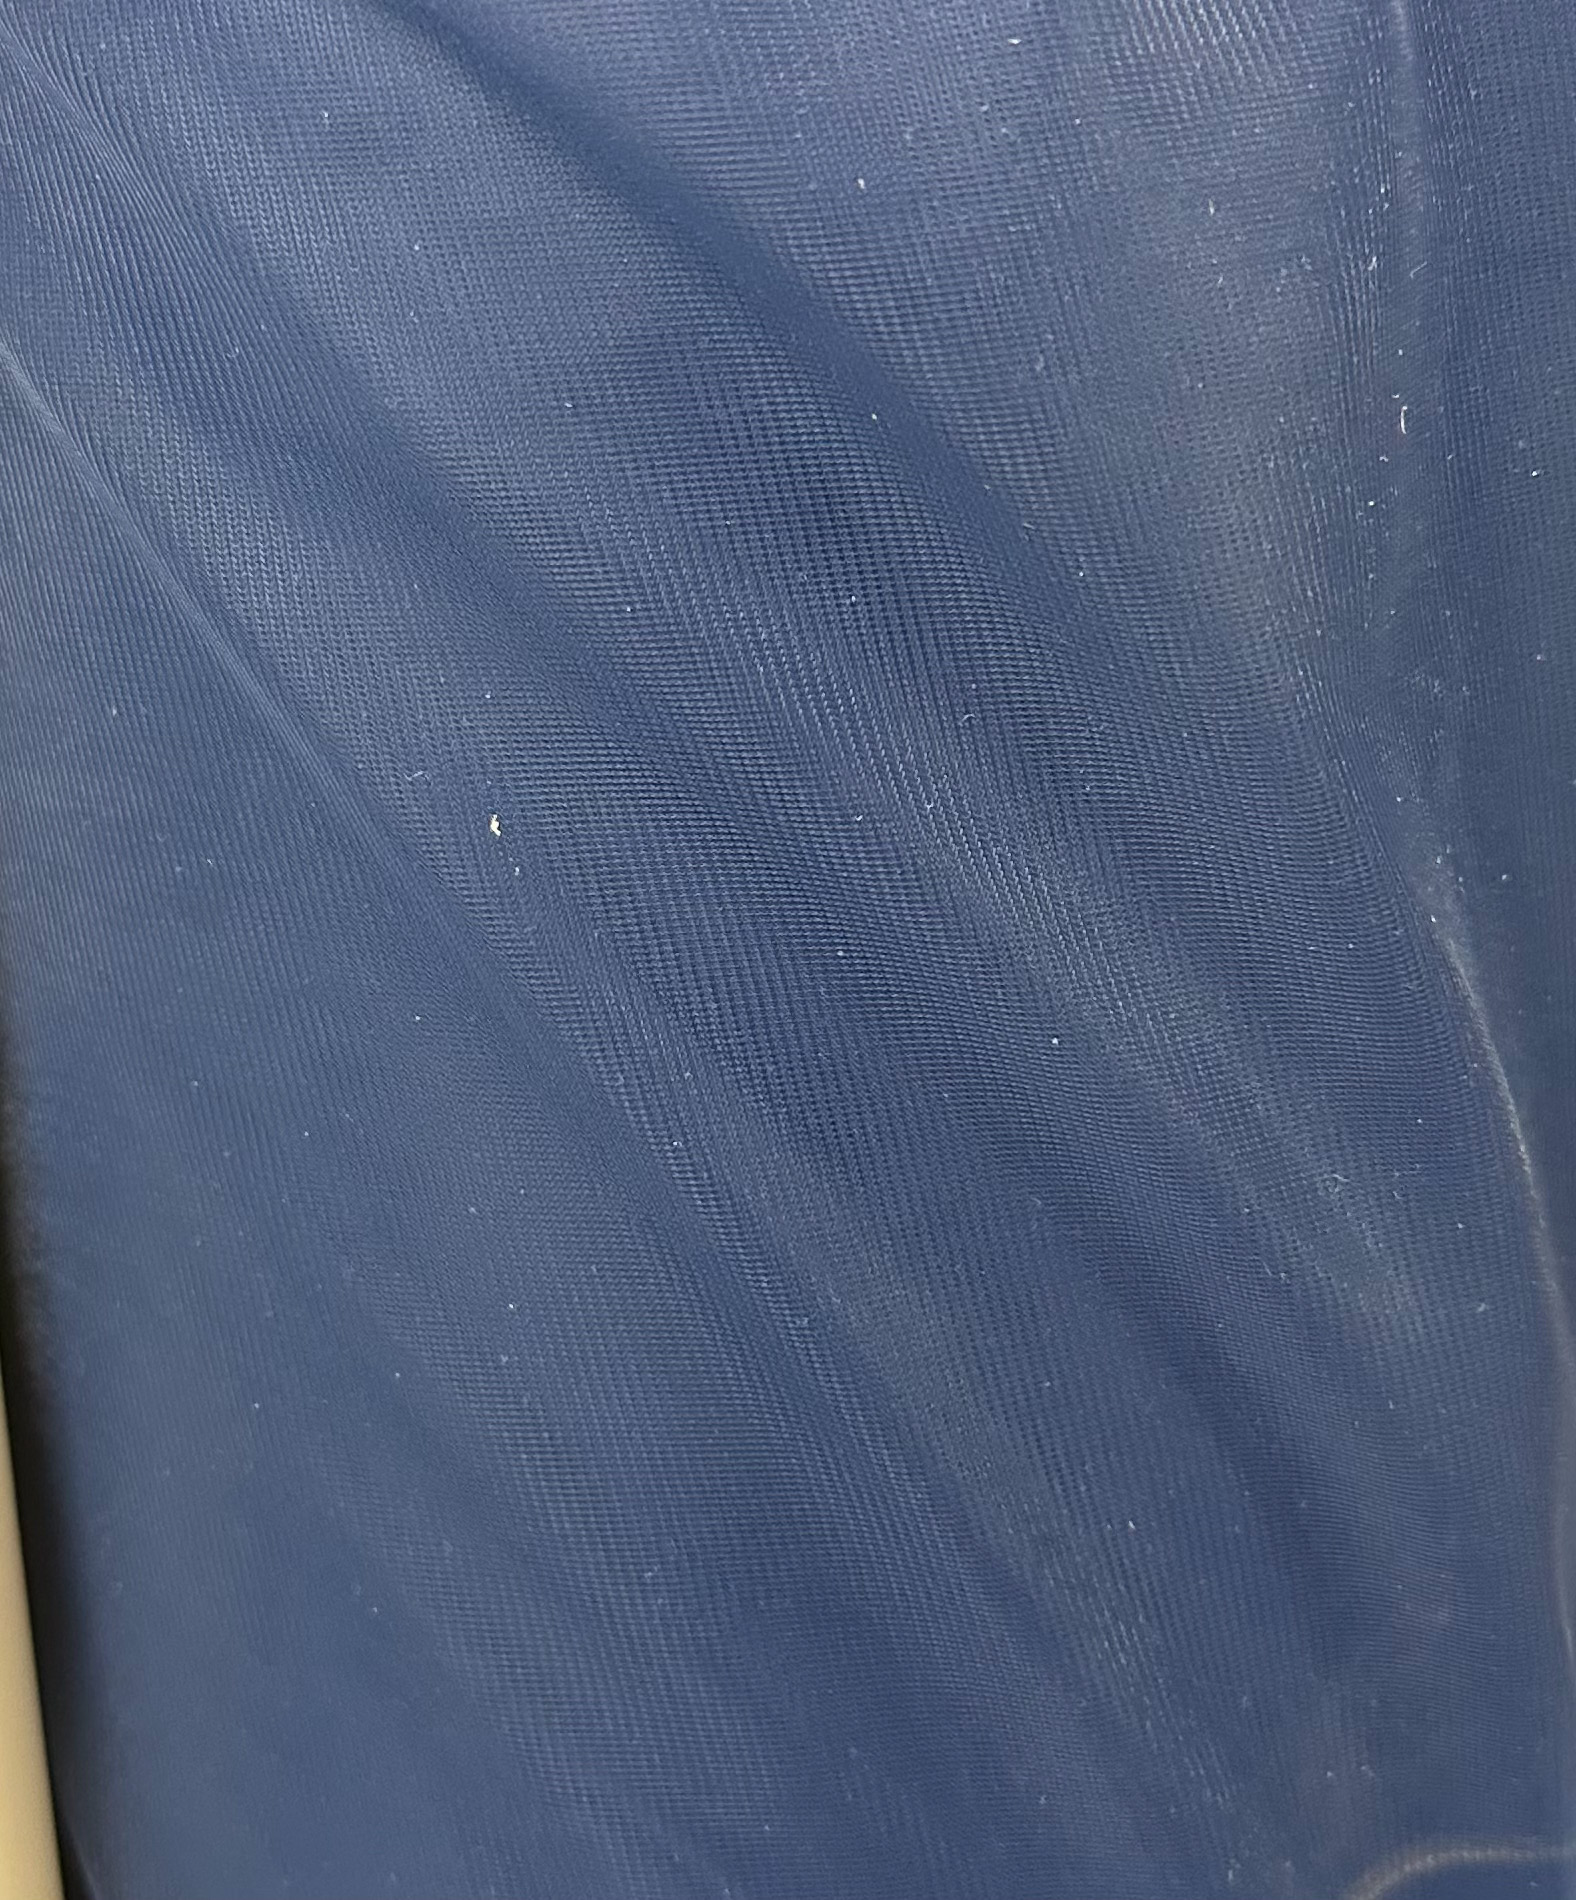 Navy Nylon Chiffon Fabric